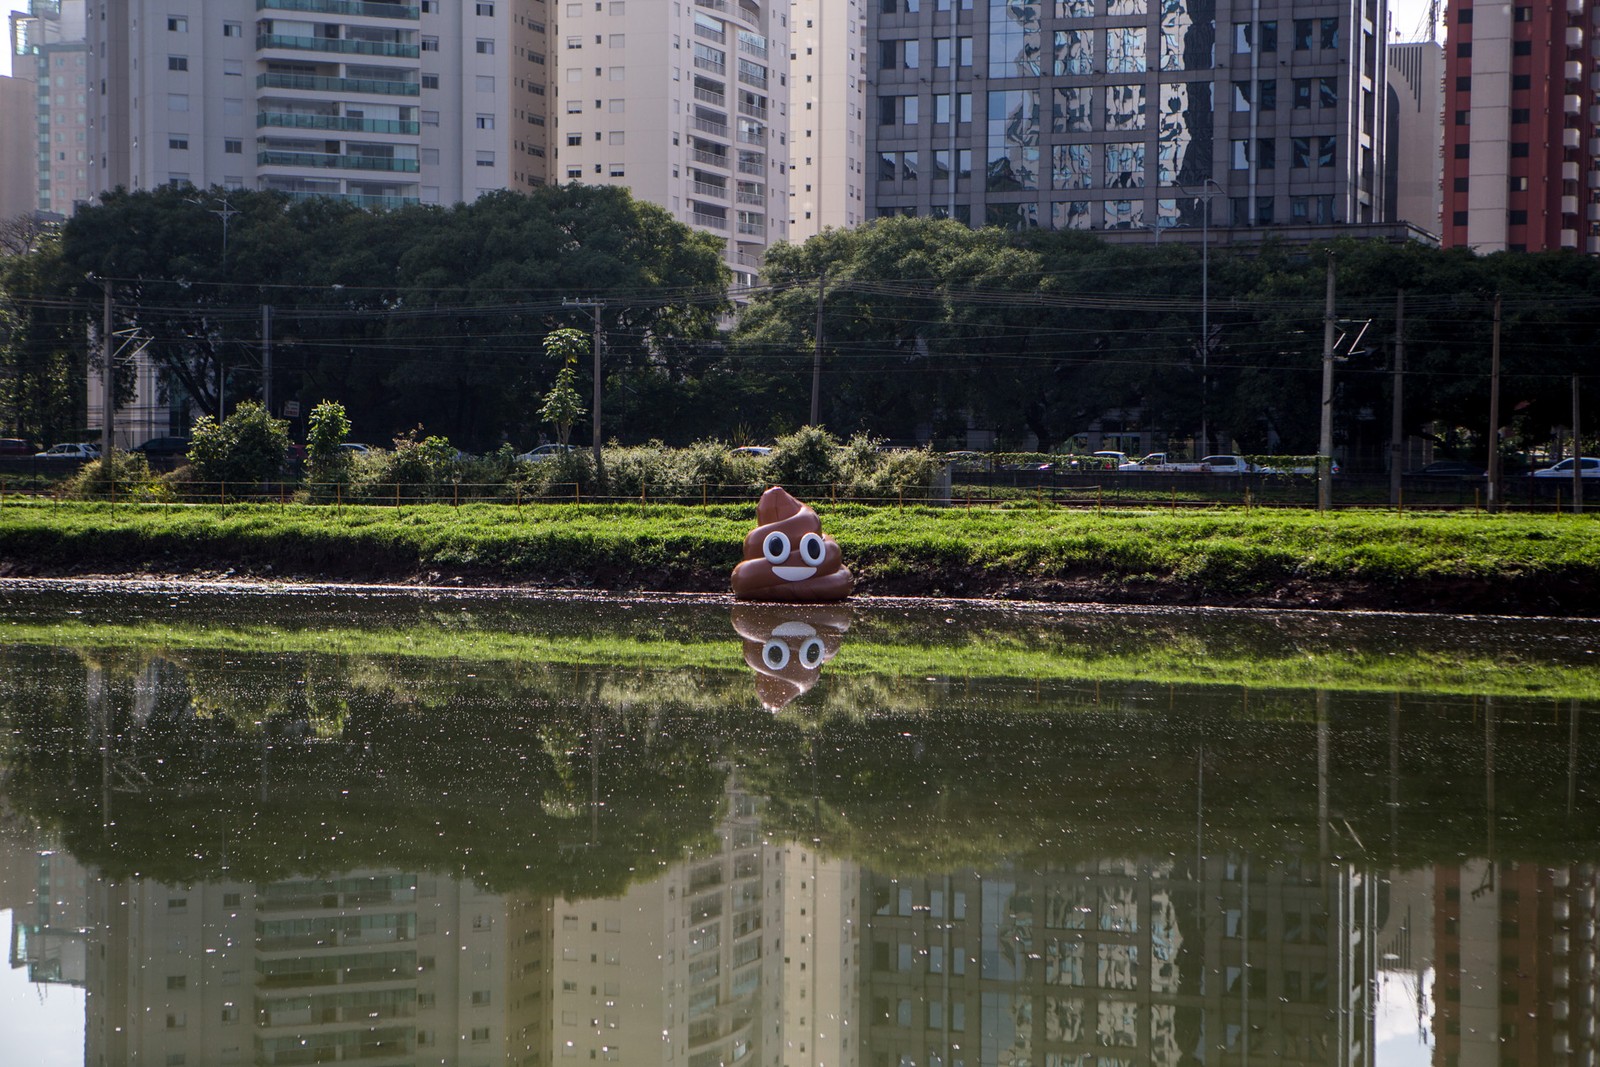 6 de março - O emoji de um cocô é visto nas margens do rio Pinheiros, em São Paulo, durante uma intervenção da ONG Volta Pinheiros pela despoluição do rio (Foto: Rafael Arbex/Estadão Conteúdo)